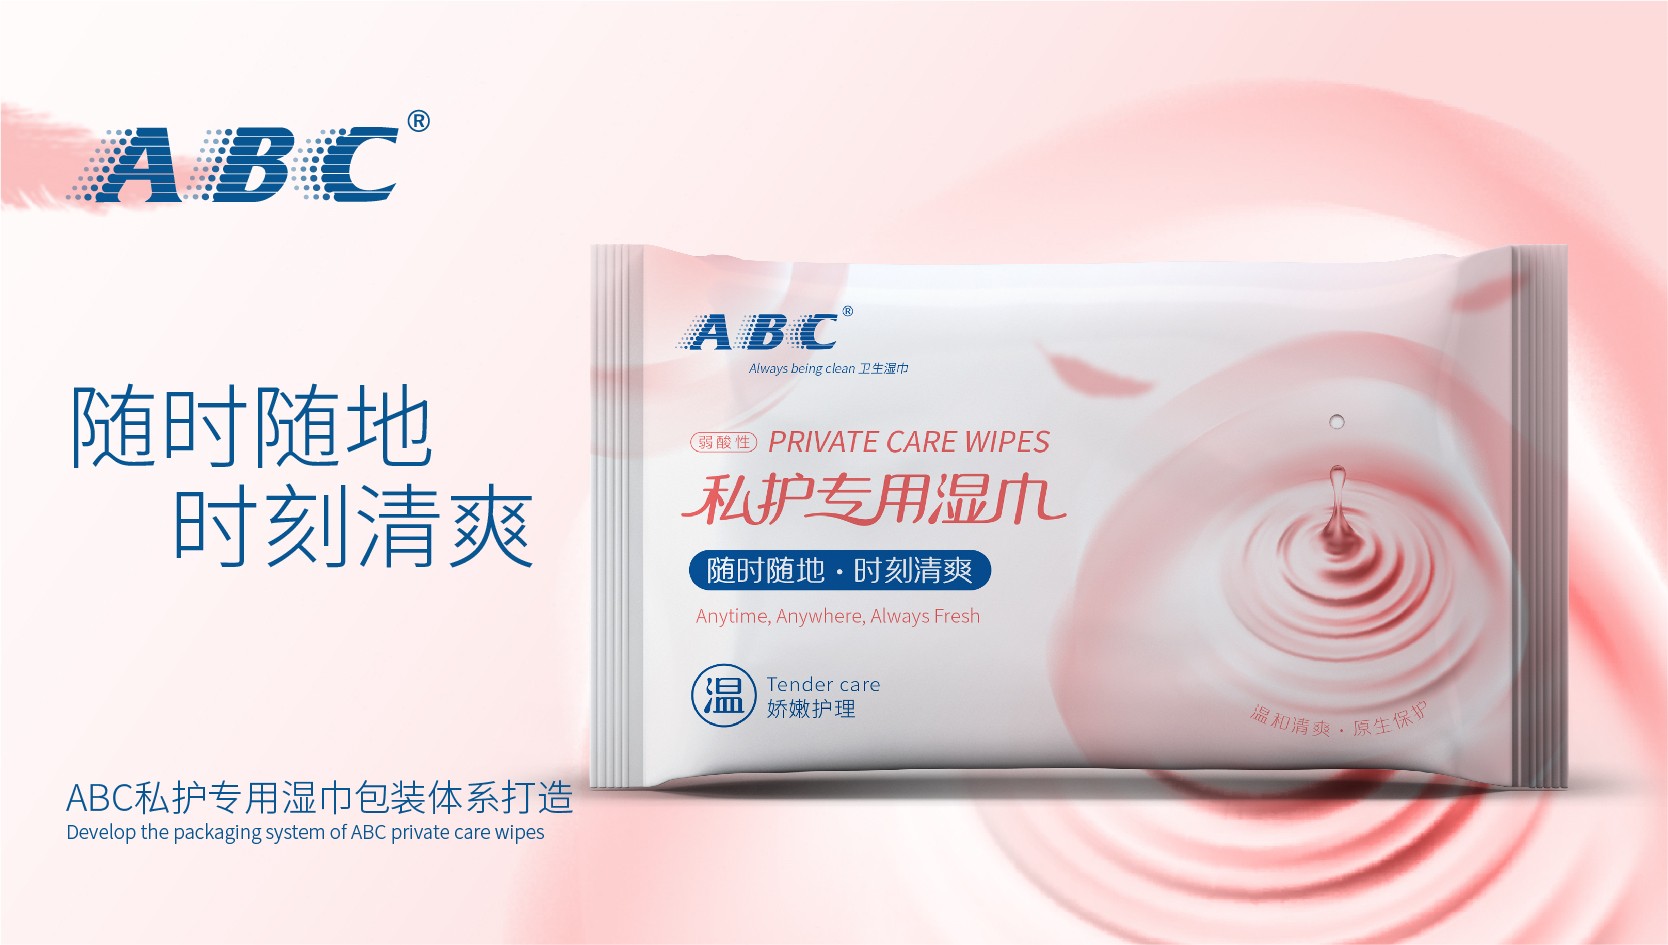 中国知名品牌ABC品牌包装塑造